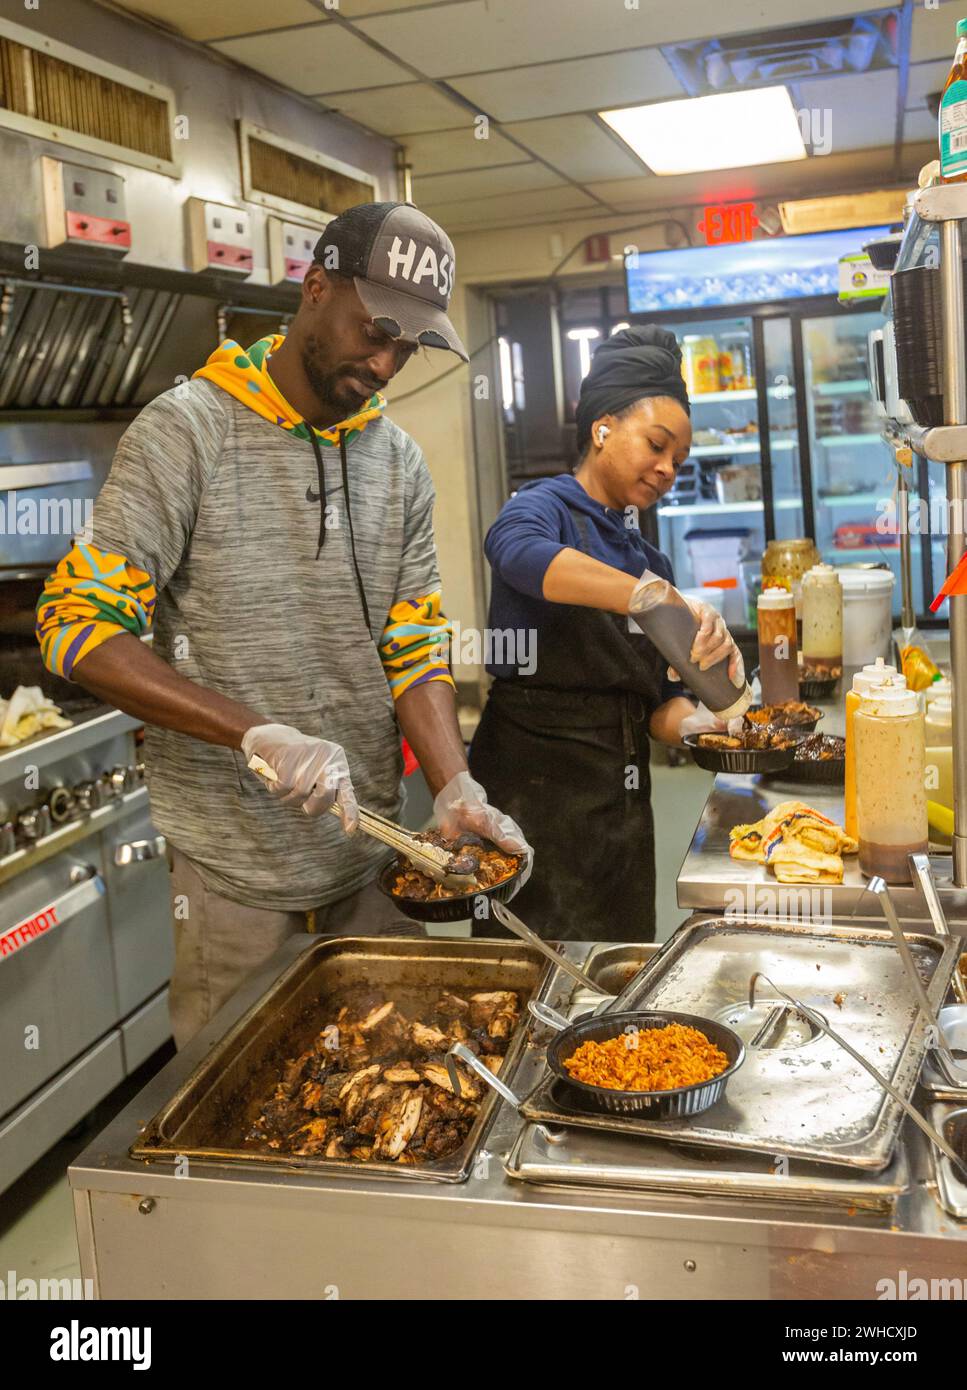 Detroit, Michigan - les travailleurs préparent la nourriture au restaurant Yum Village, qui sert des repas afro-caribéens. Banque D'Images